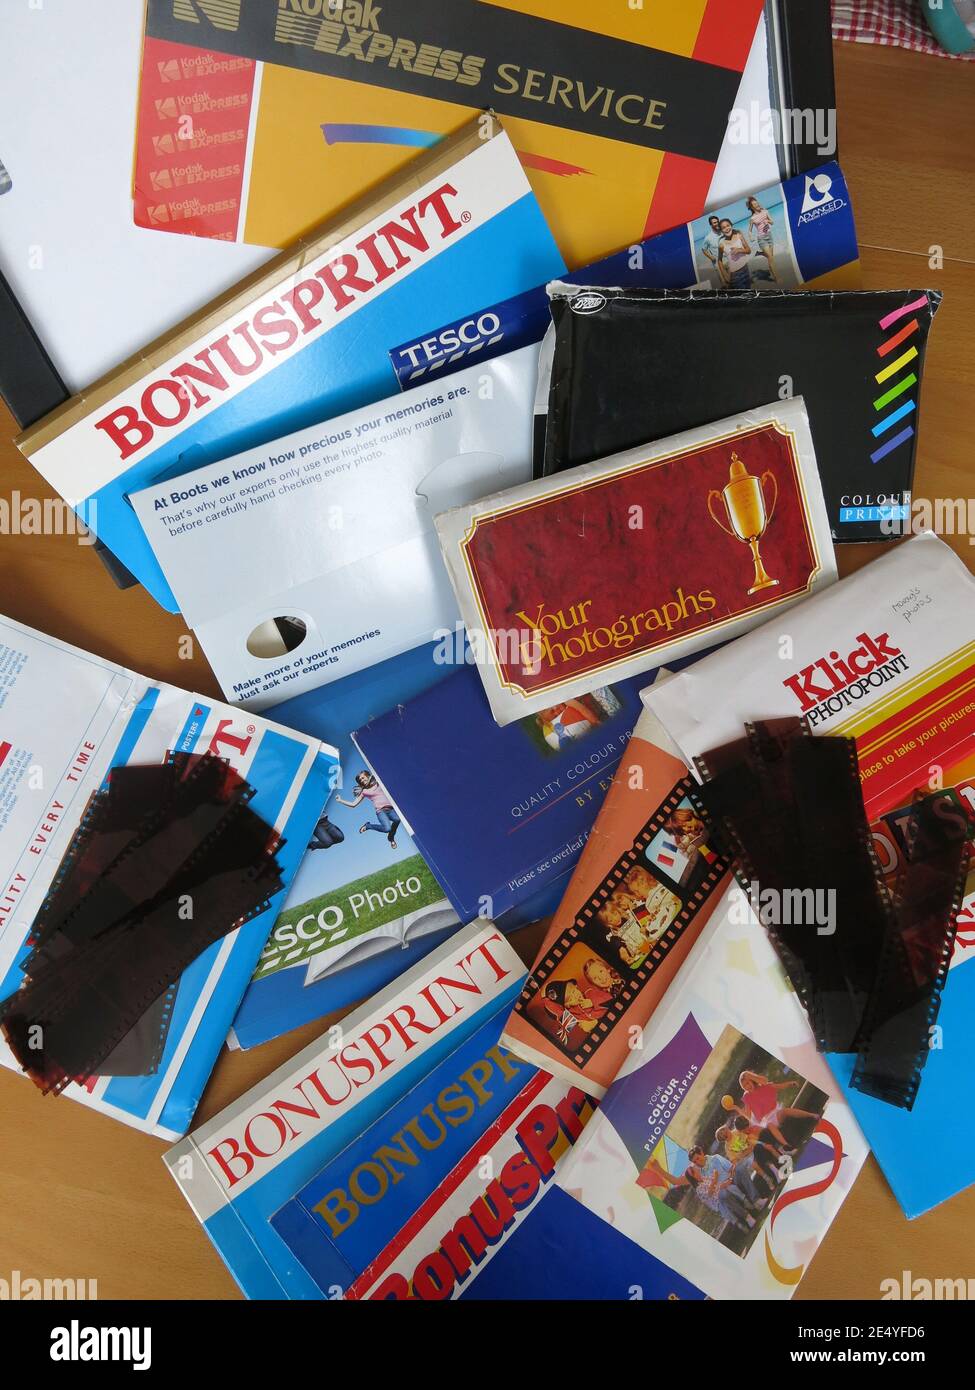 Gran variedad de carteras fotográficas, por ejemplo, Bonusprint, Boots,  Tesco, Kodak y Klick, que devolvería por correo las fotografías impresas  después de enviar la película de su cámara Fotografía de stock -